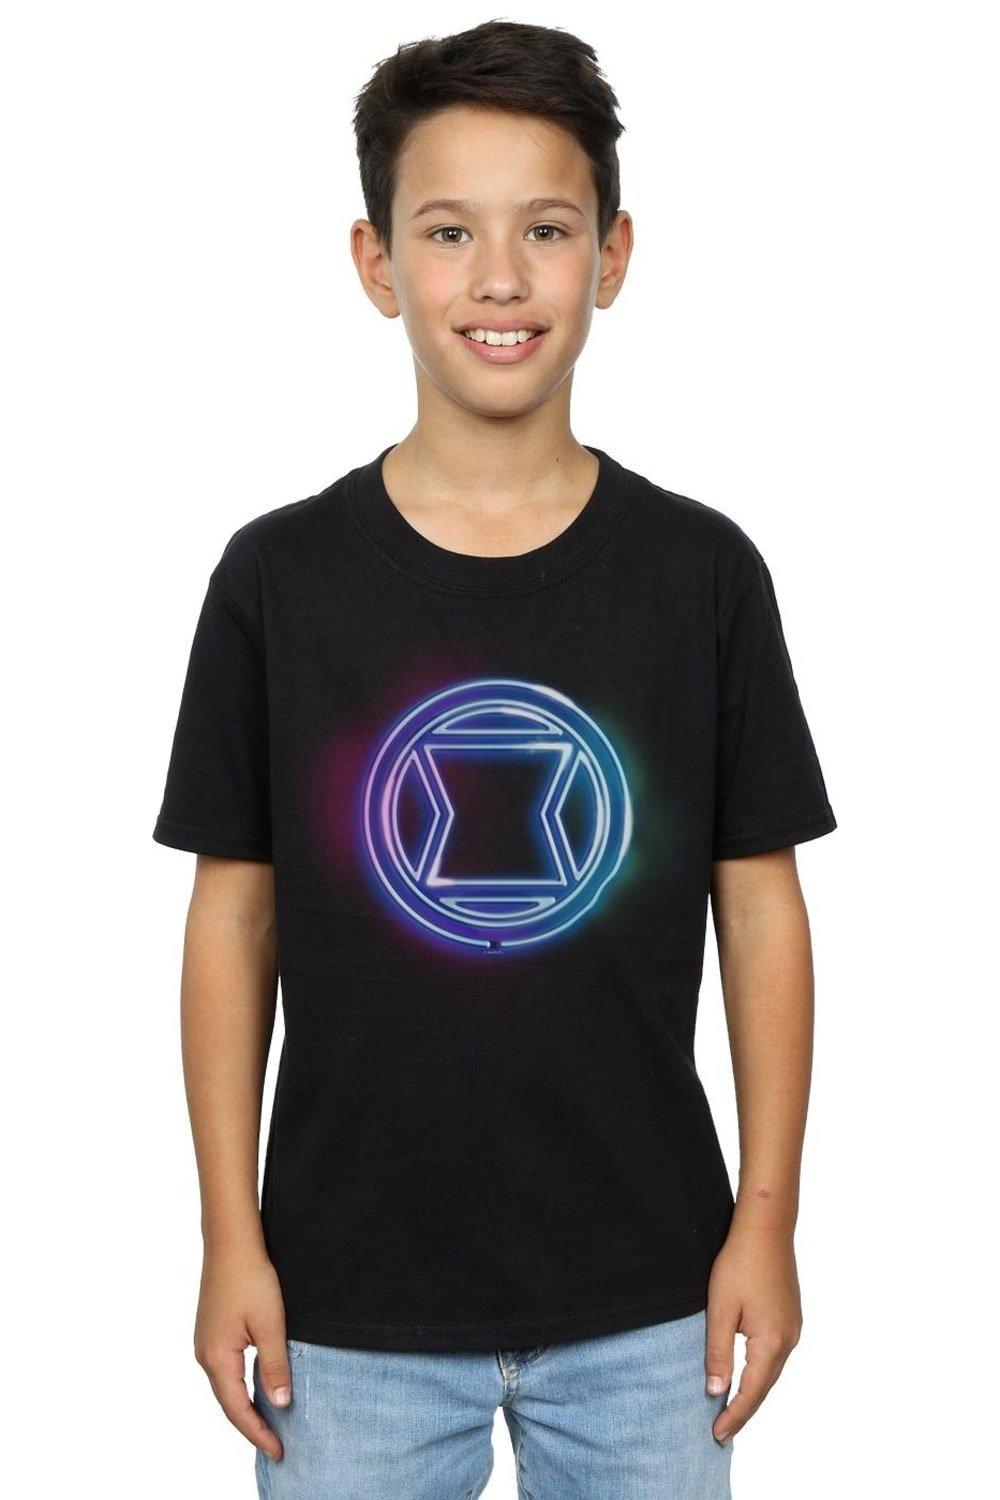 Black Widow Neon Logo T-Shirt